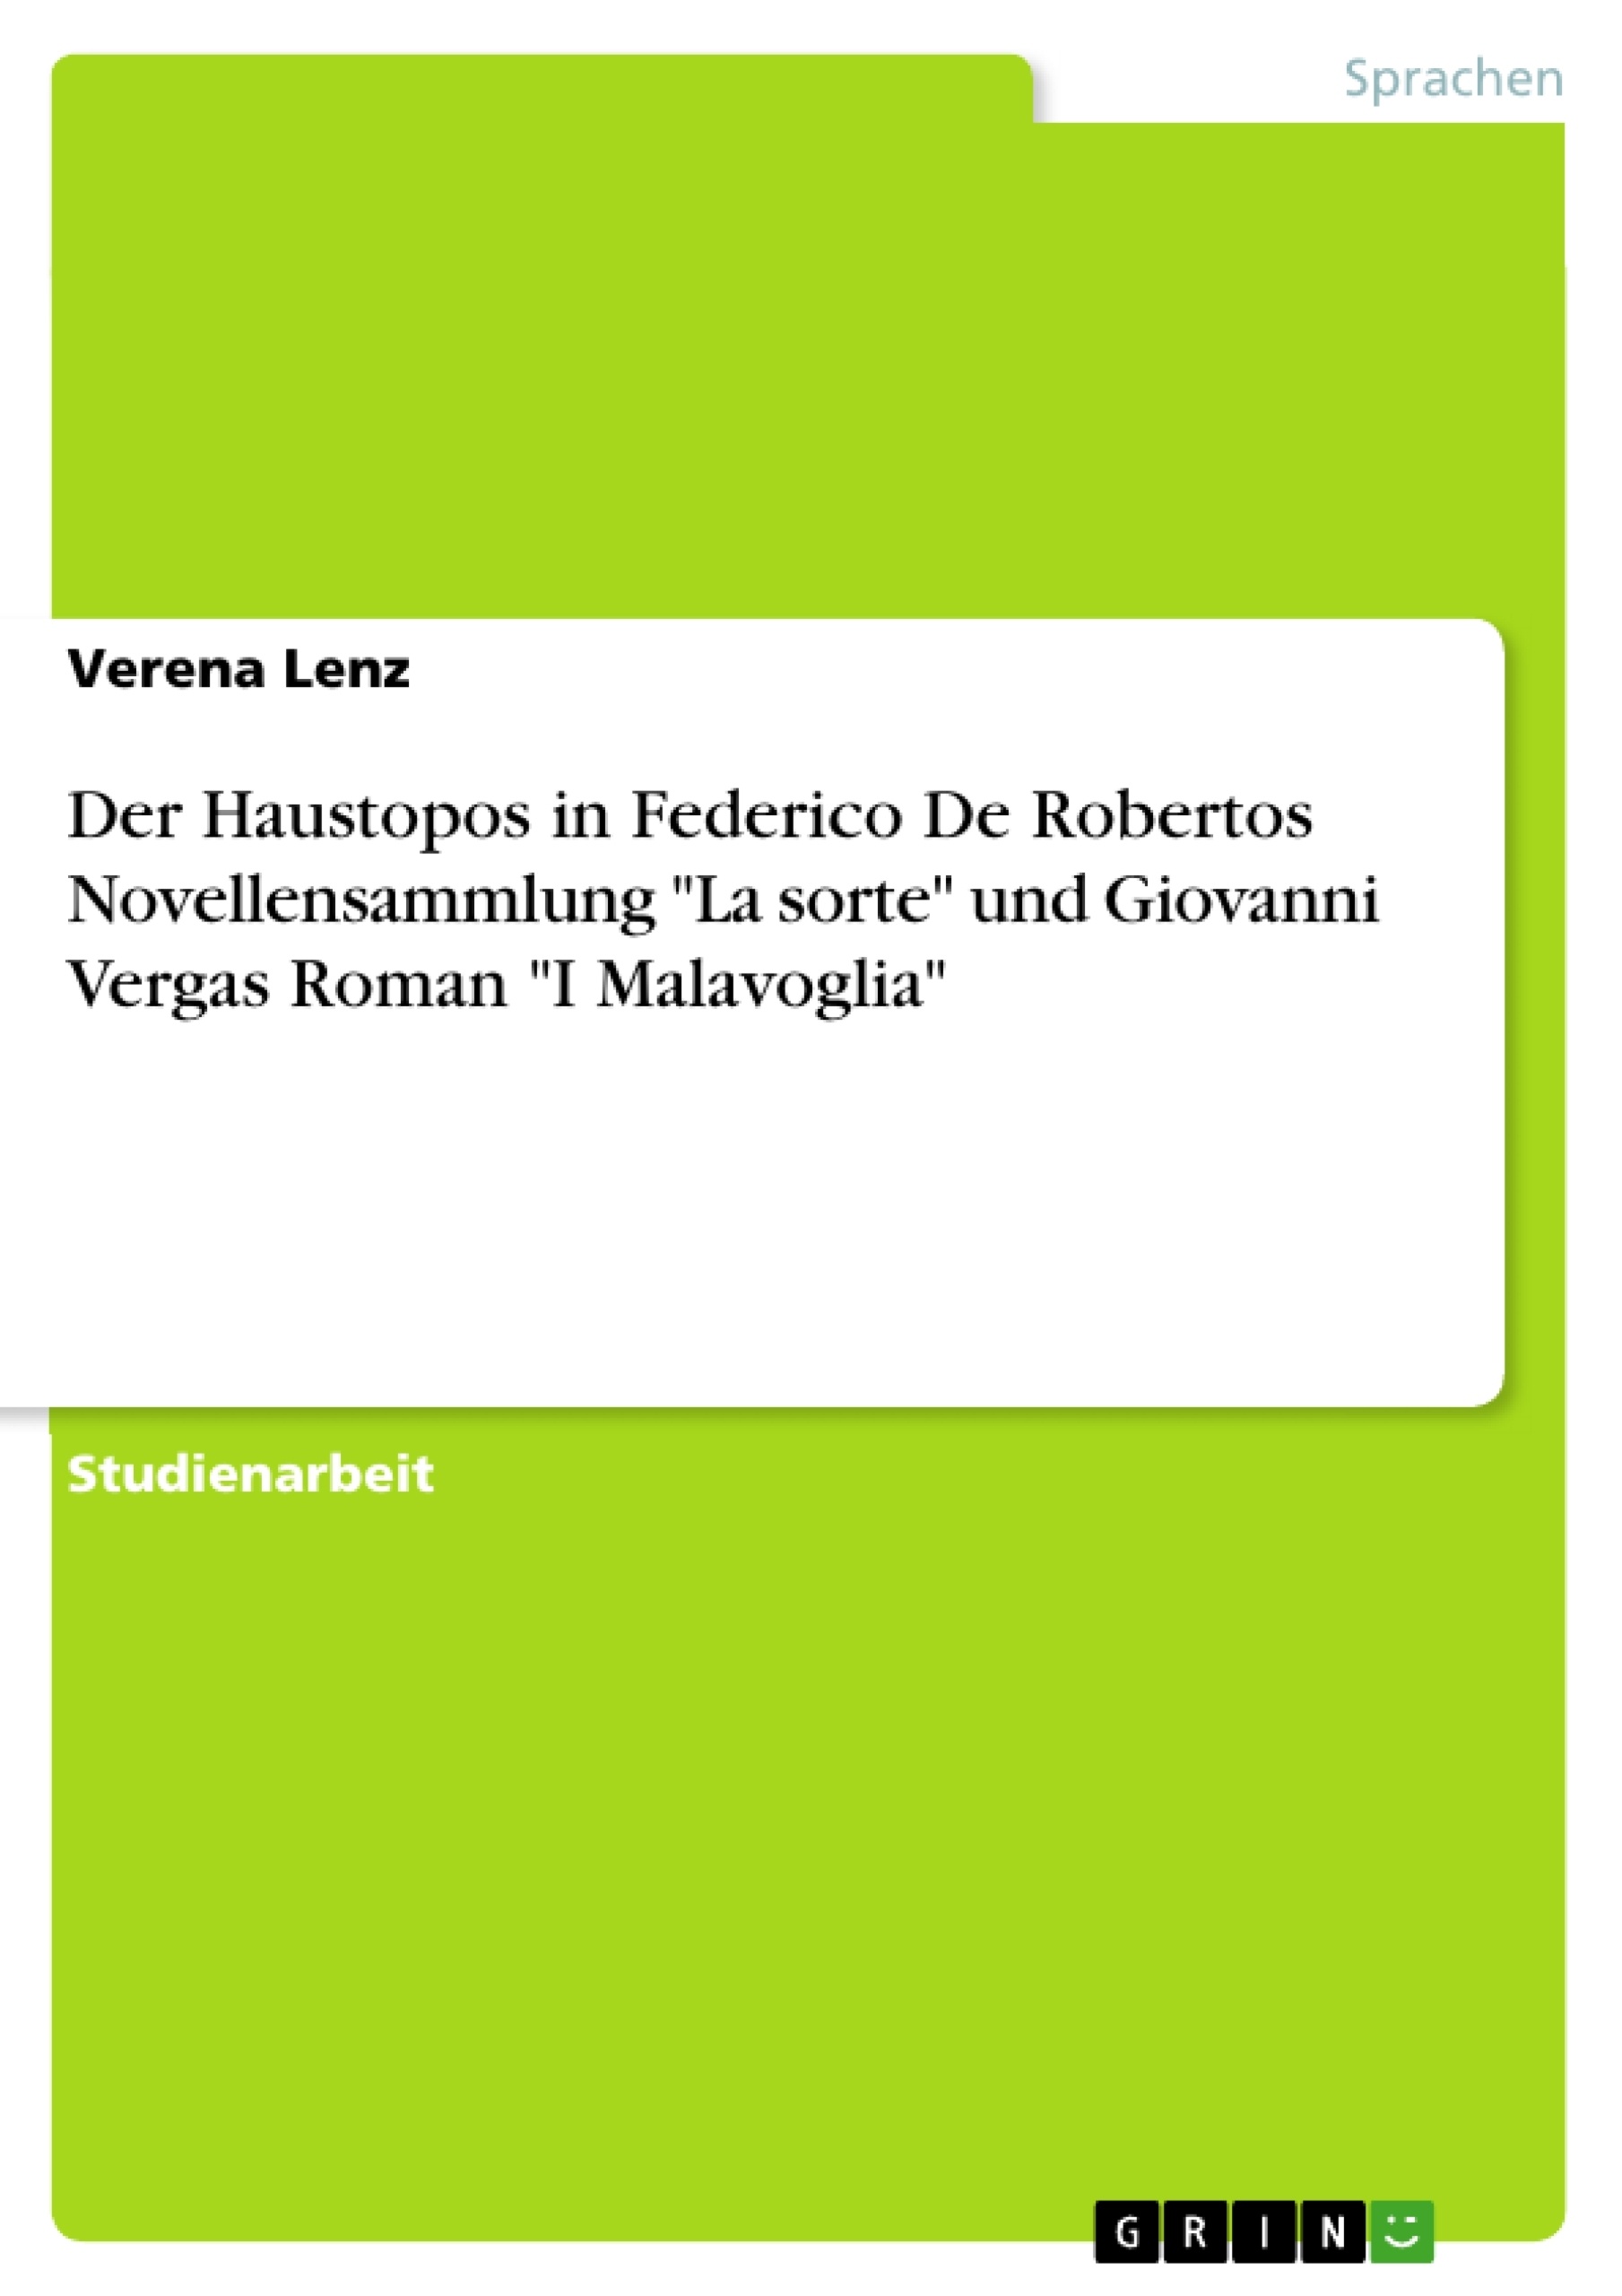 Titel: Der Haustopos in Federico De Robertos Novellensammlung "La sorte" und Giovanni Vergas Roman "I Malavoglia"